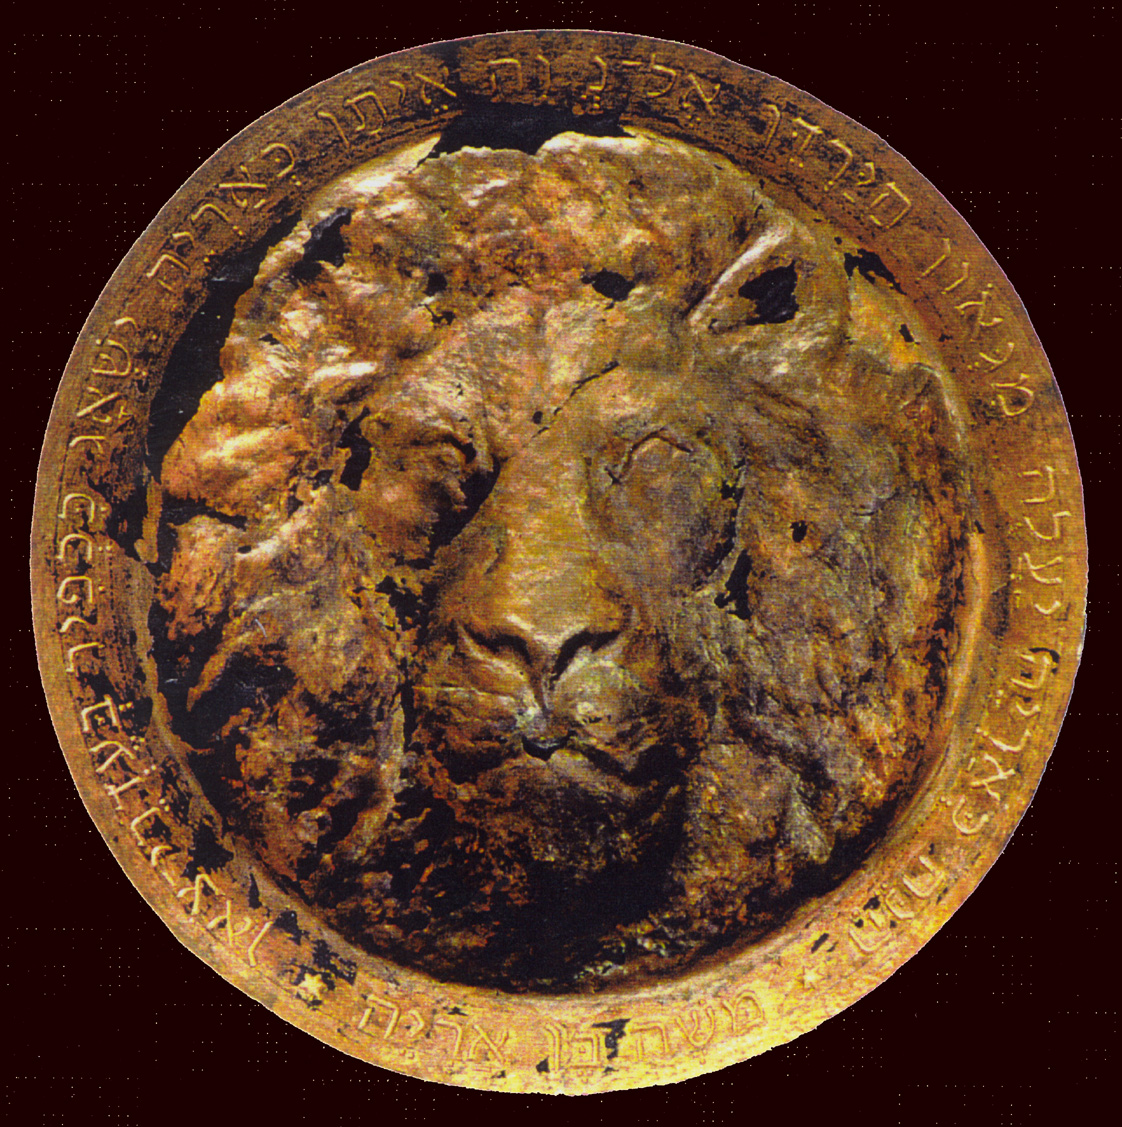 gedreven schaal,de leeuw van Judah, materiaal ;koper, diam ;120, cm. particulier bezit.